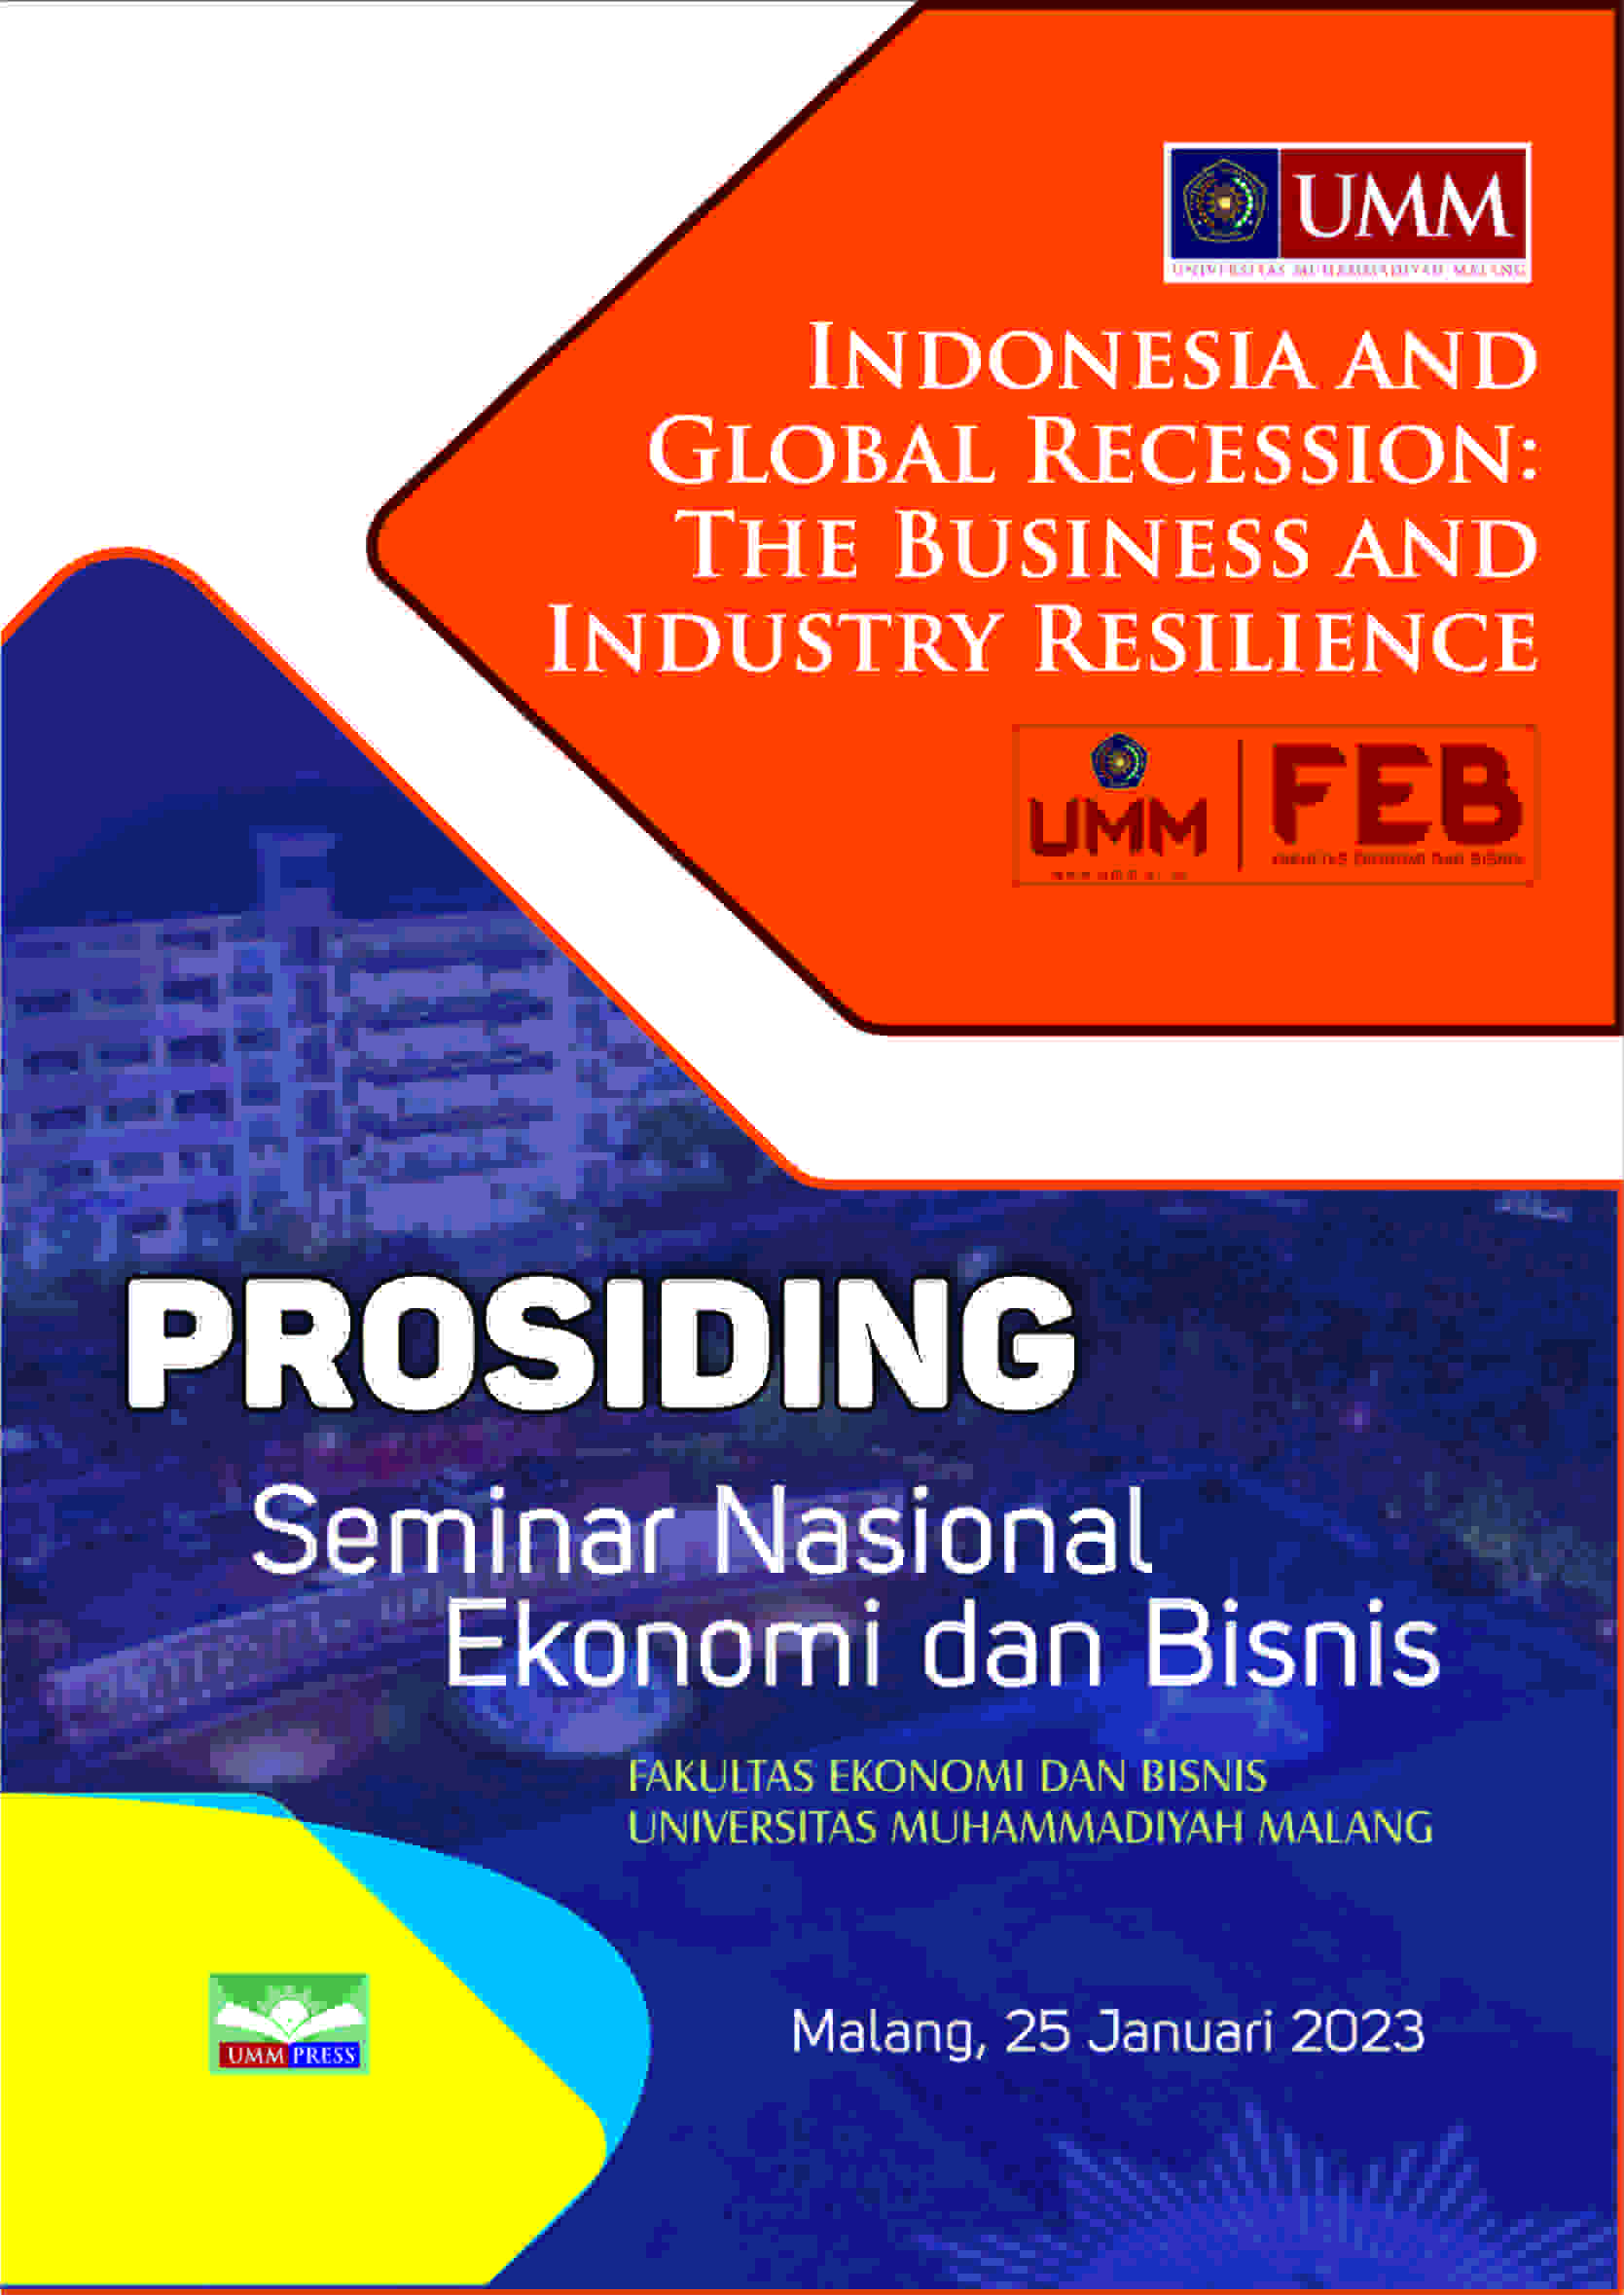 PROSIDING SEMINAR NASIONAL EKONOMI DAN BISNIS 2023: INDONESIA AND GLOBAL RECESSION: THE BUSINESS AND